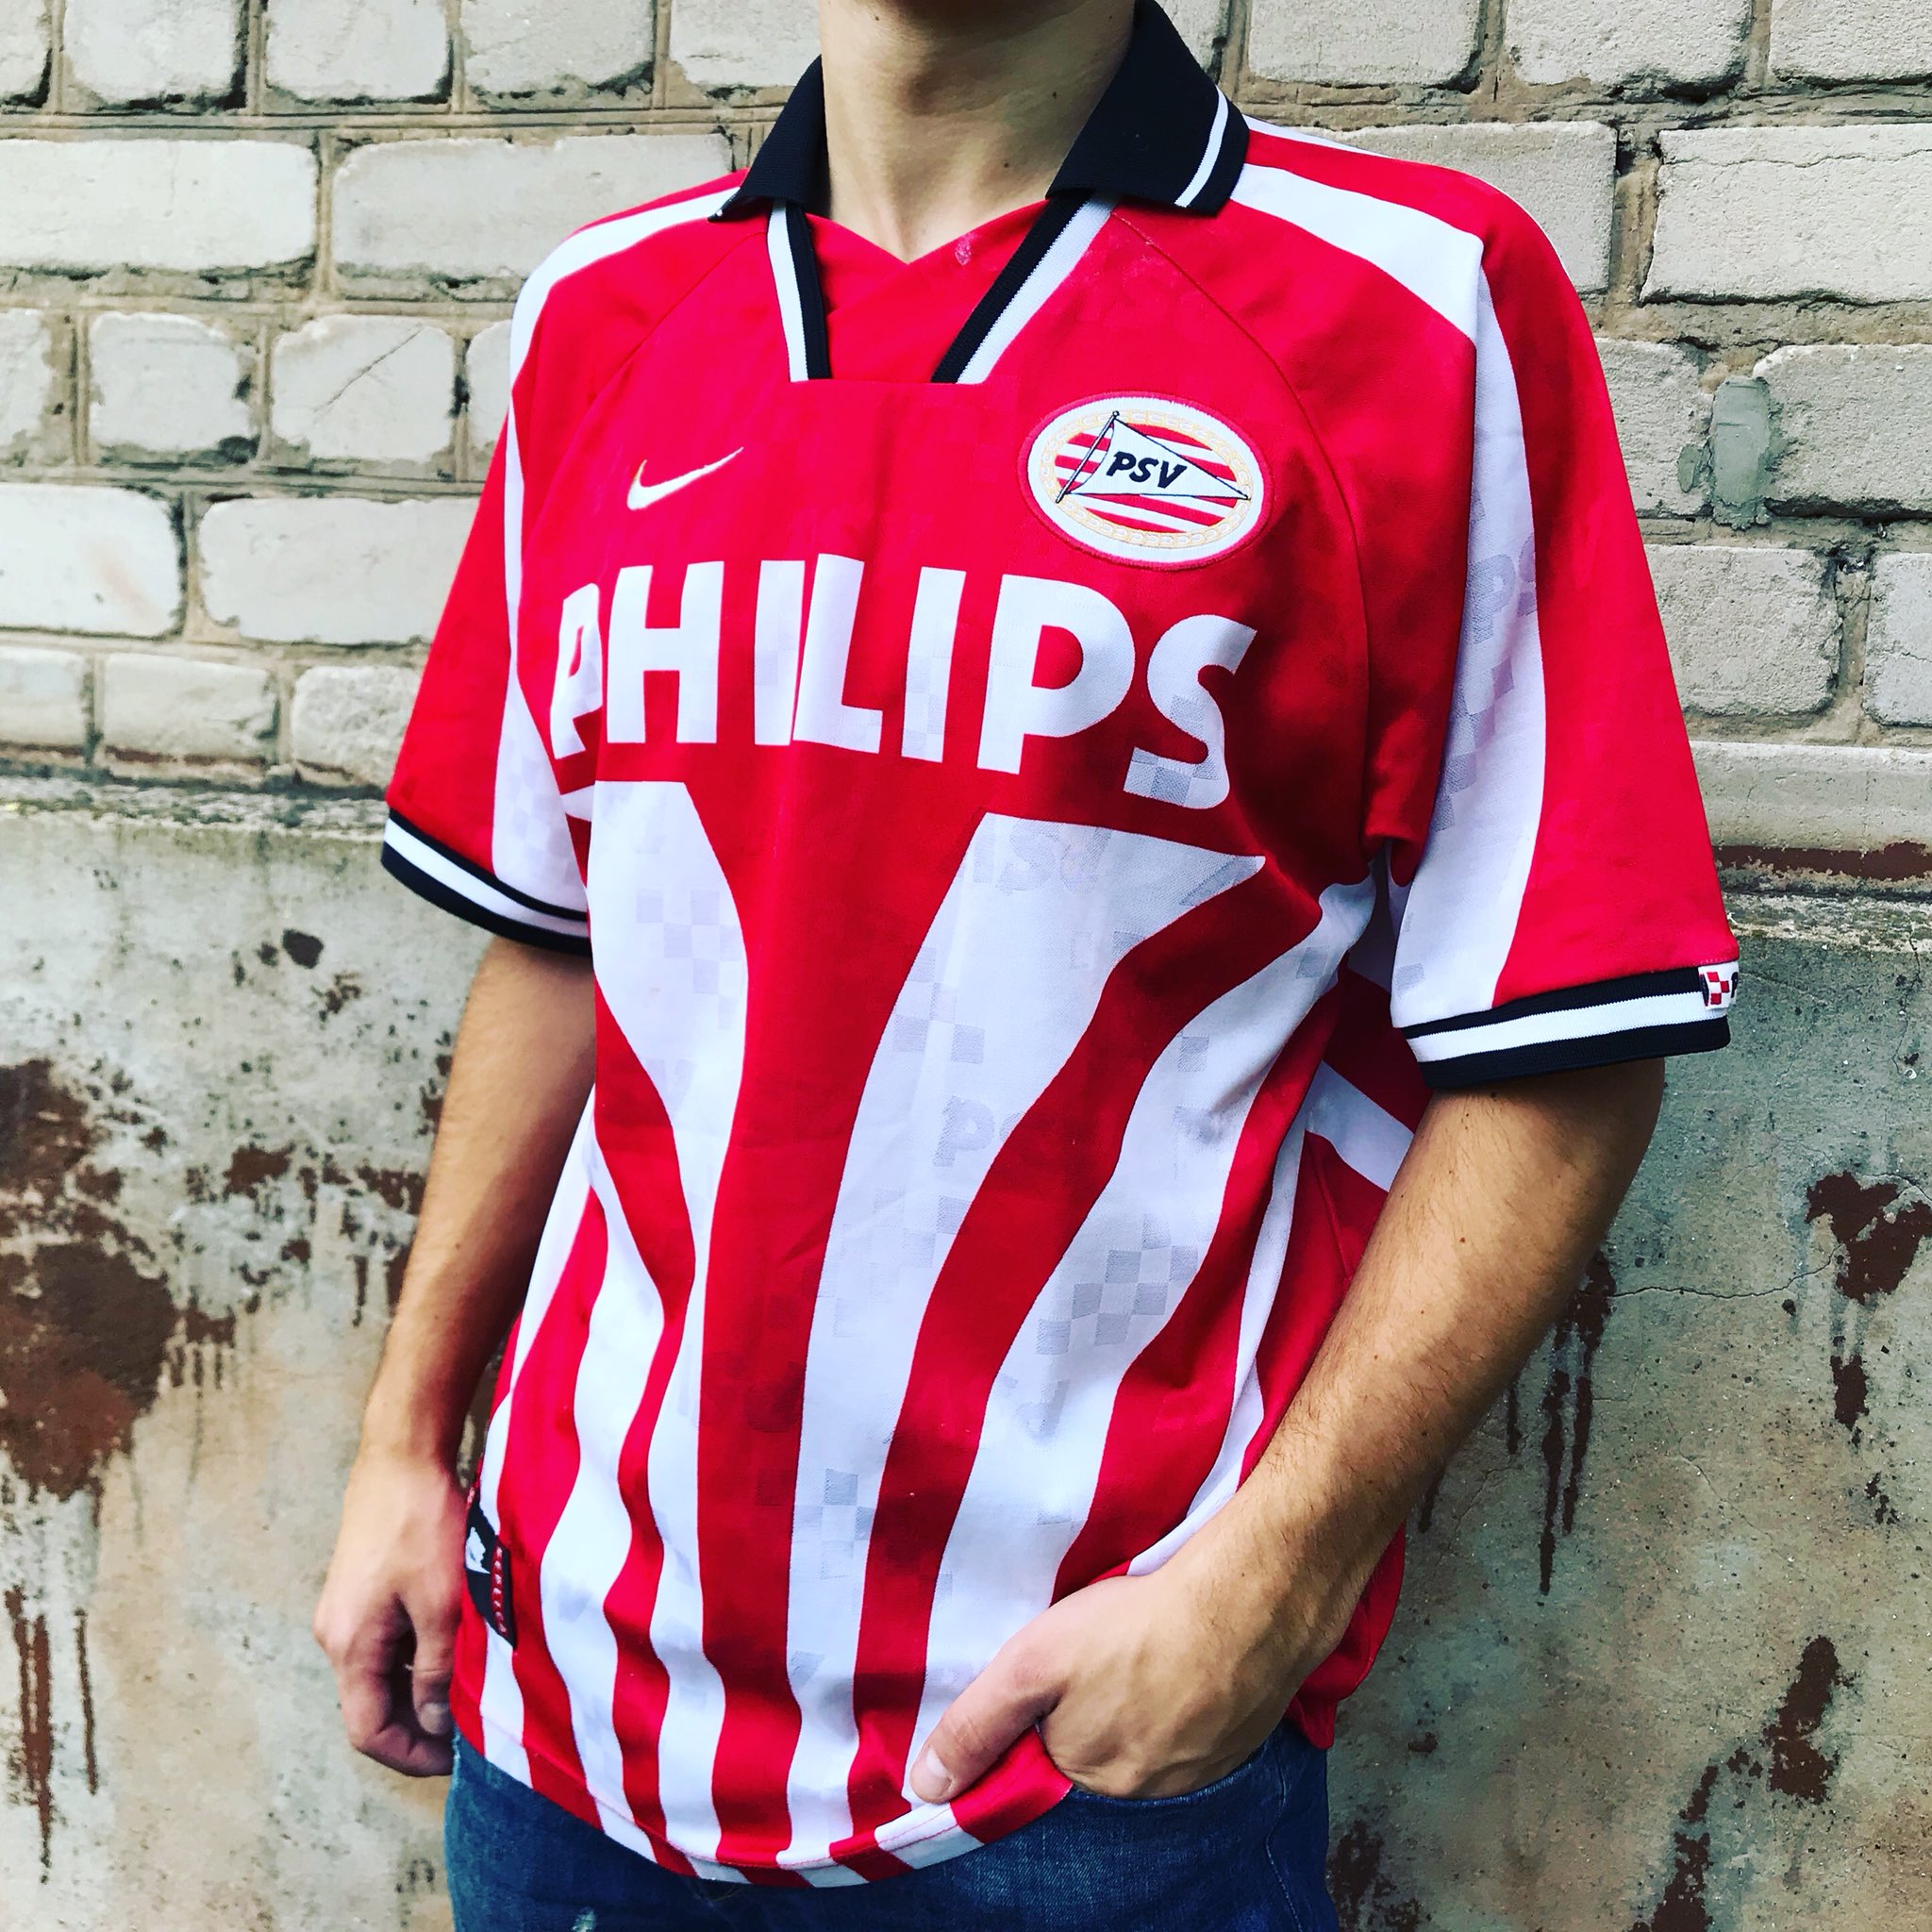 Hijgend Omgekeerd Whitney ClassicFootballShirt lóri Twitter: "1996-97 PSV Eindhoven Home shirt made  by Nike #psv #psveindhoven #nike #footballshirt #footballshirts  #retrofootball #classicfootball_shirt https://t.co/Nme0V8DmRk" / Twitter